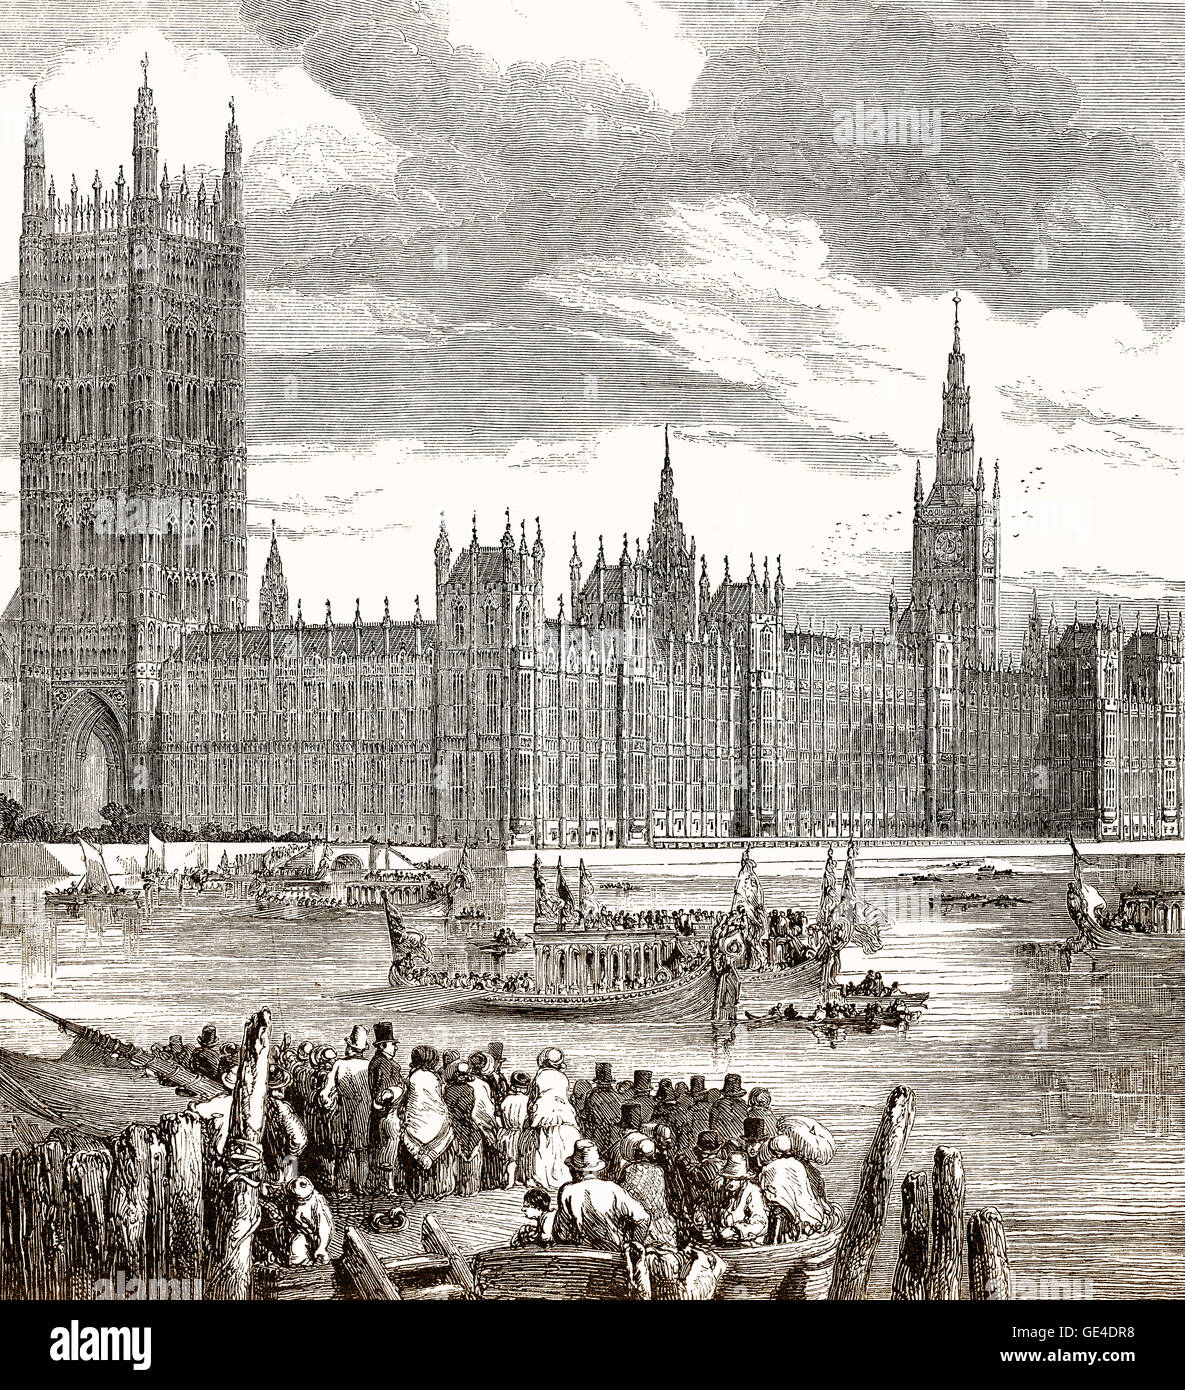 La Chambre du Parlement, Westminster, Londres, Angleterre, 19e siècle Banque D'Images